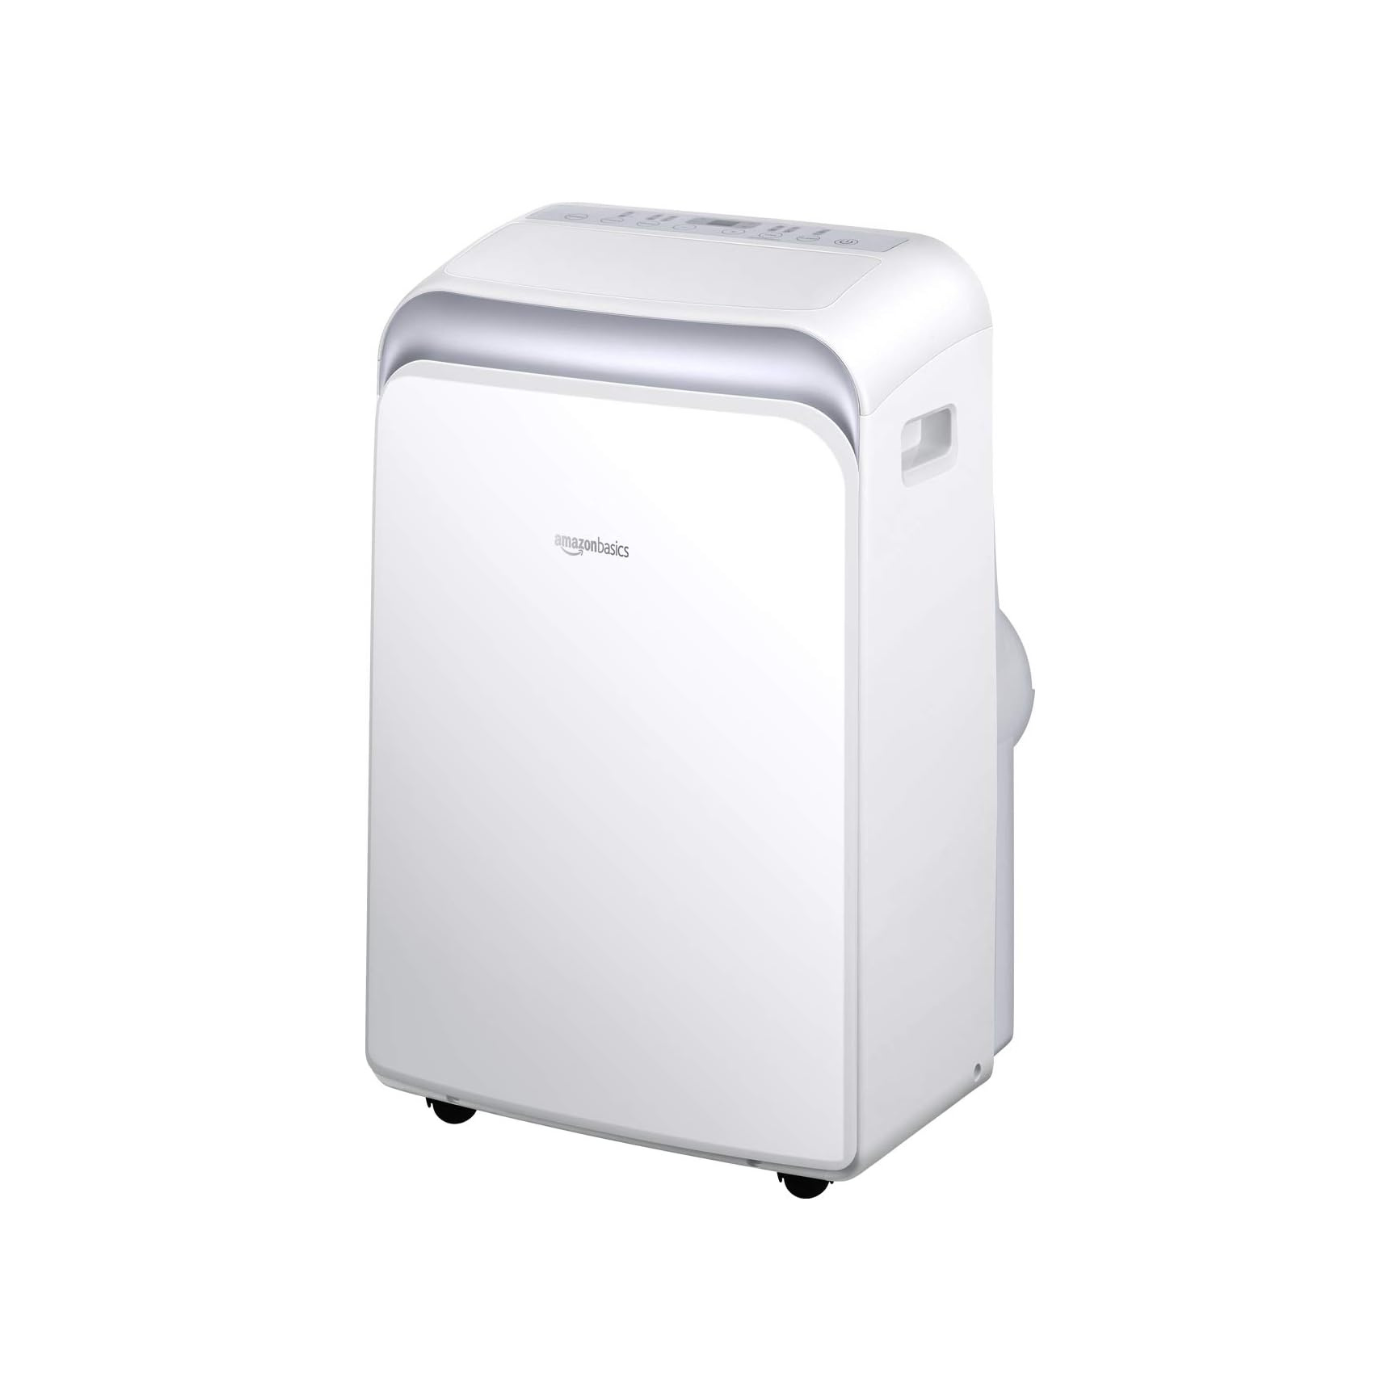 Amazon Basics 13000 BTU Portable Air Conditioner